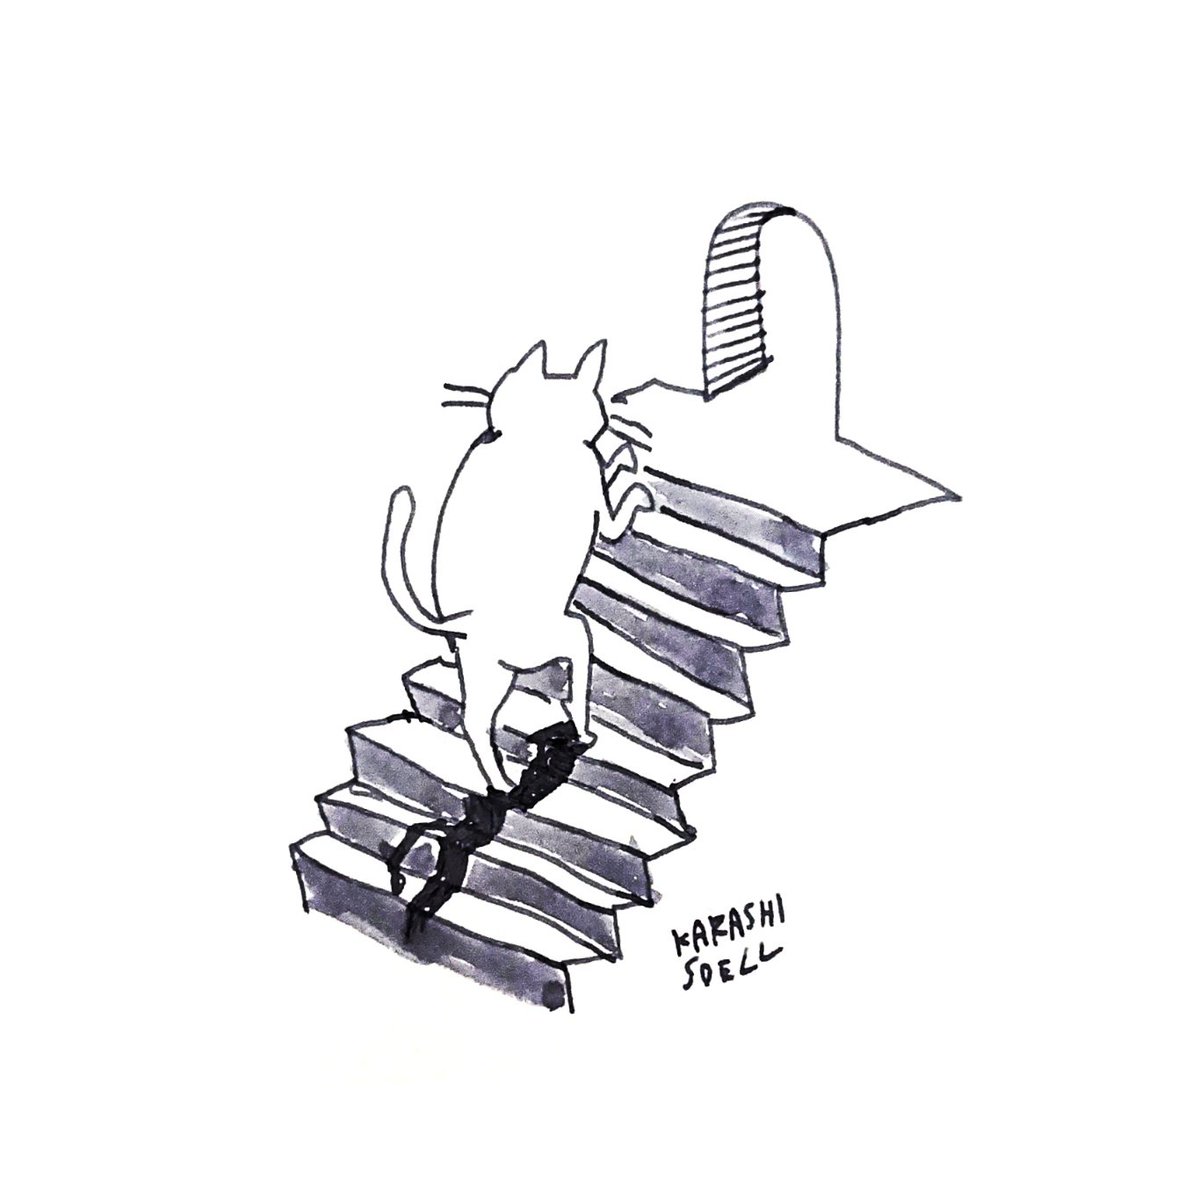 カラシソエル イラストレーター 今日のイラスト 階段をのぼる猫 今日のカラシイラスト T Co Ygaipfyufw Twitter